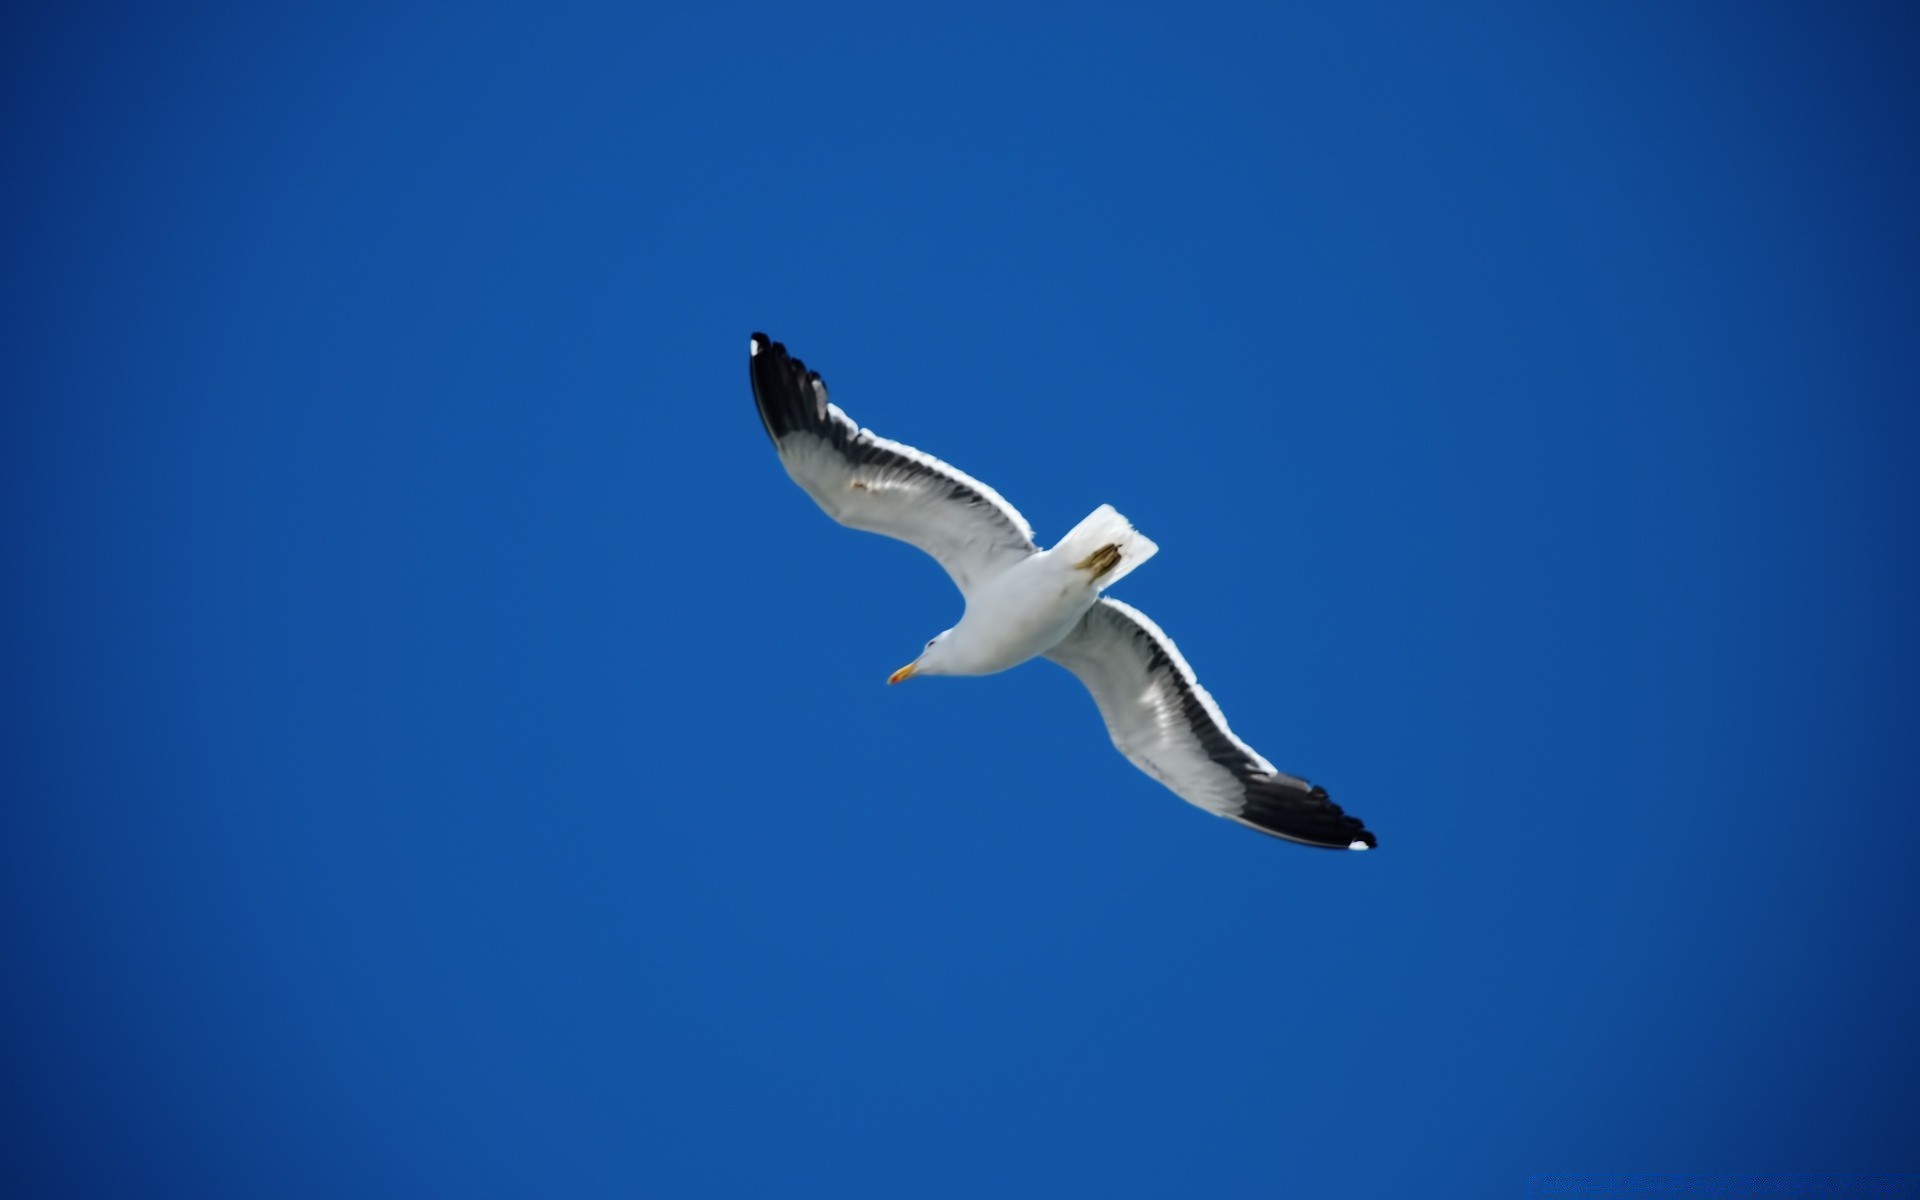 seagull bird seagulls wildlife sky outdoors nature flight freedom daylight